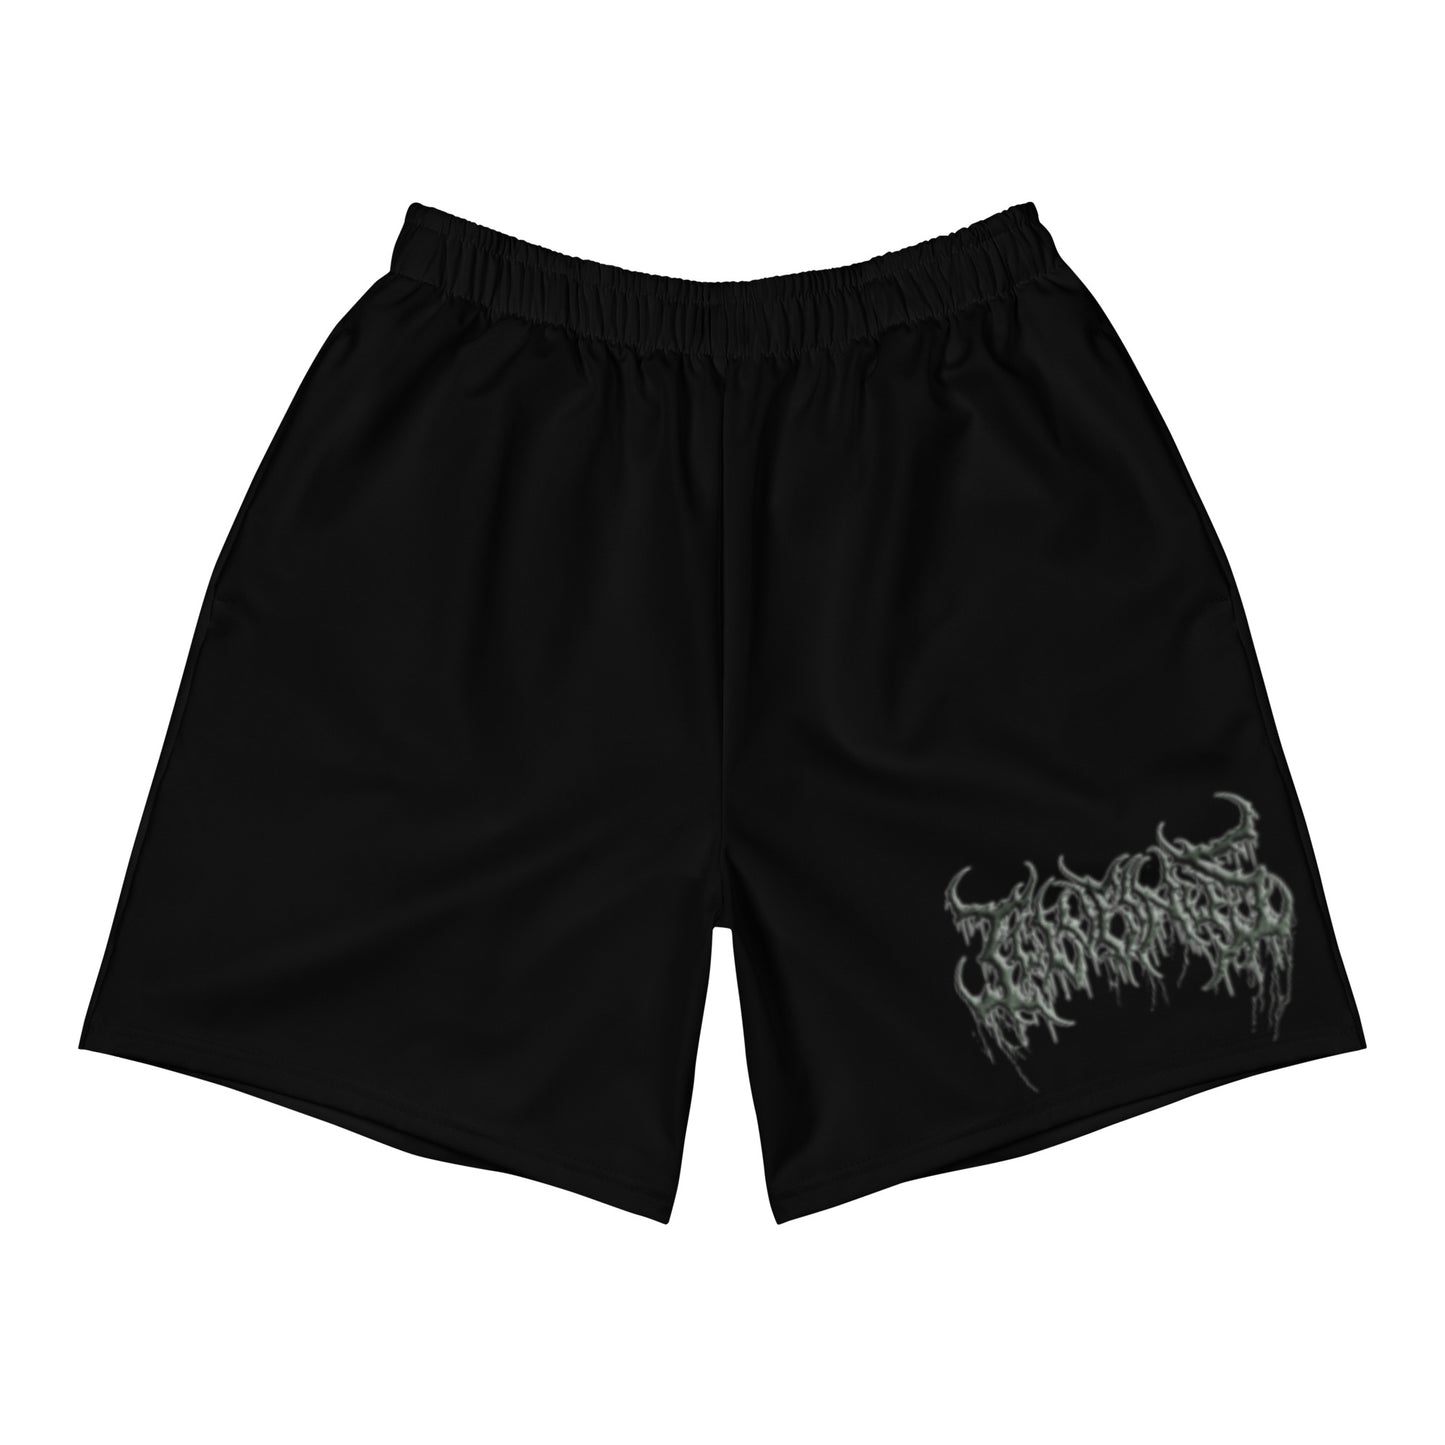 Slime n Scram Shorts - Men's, Black